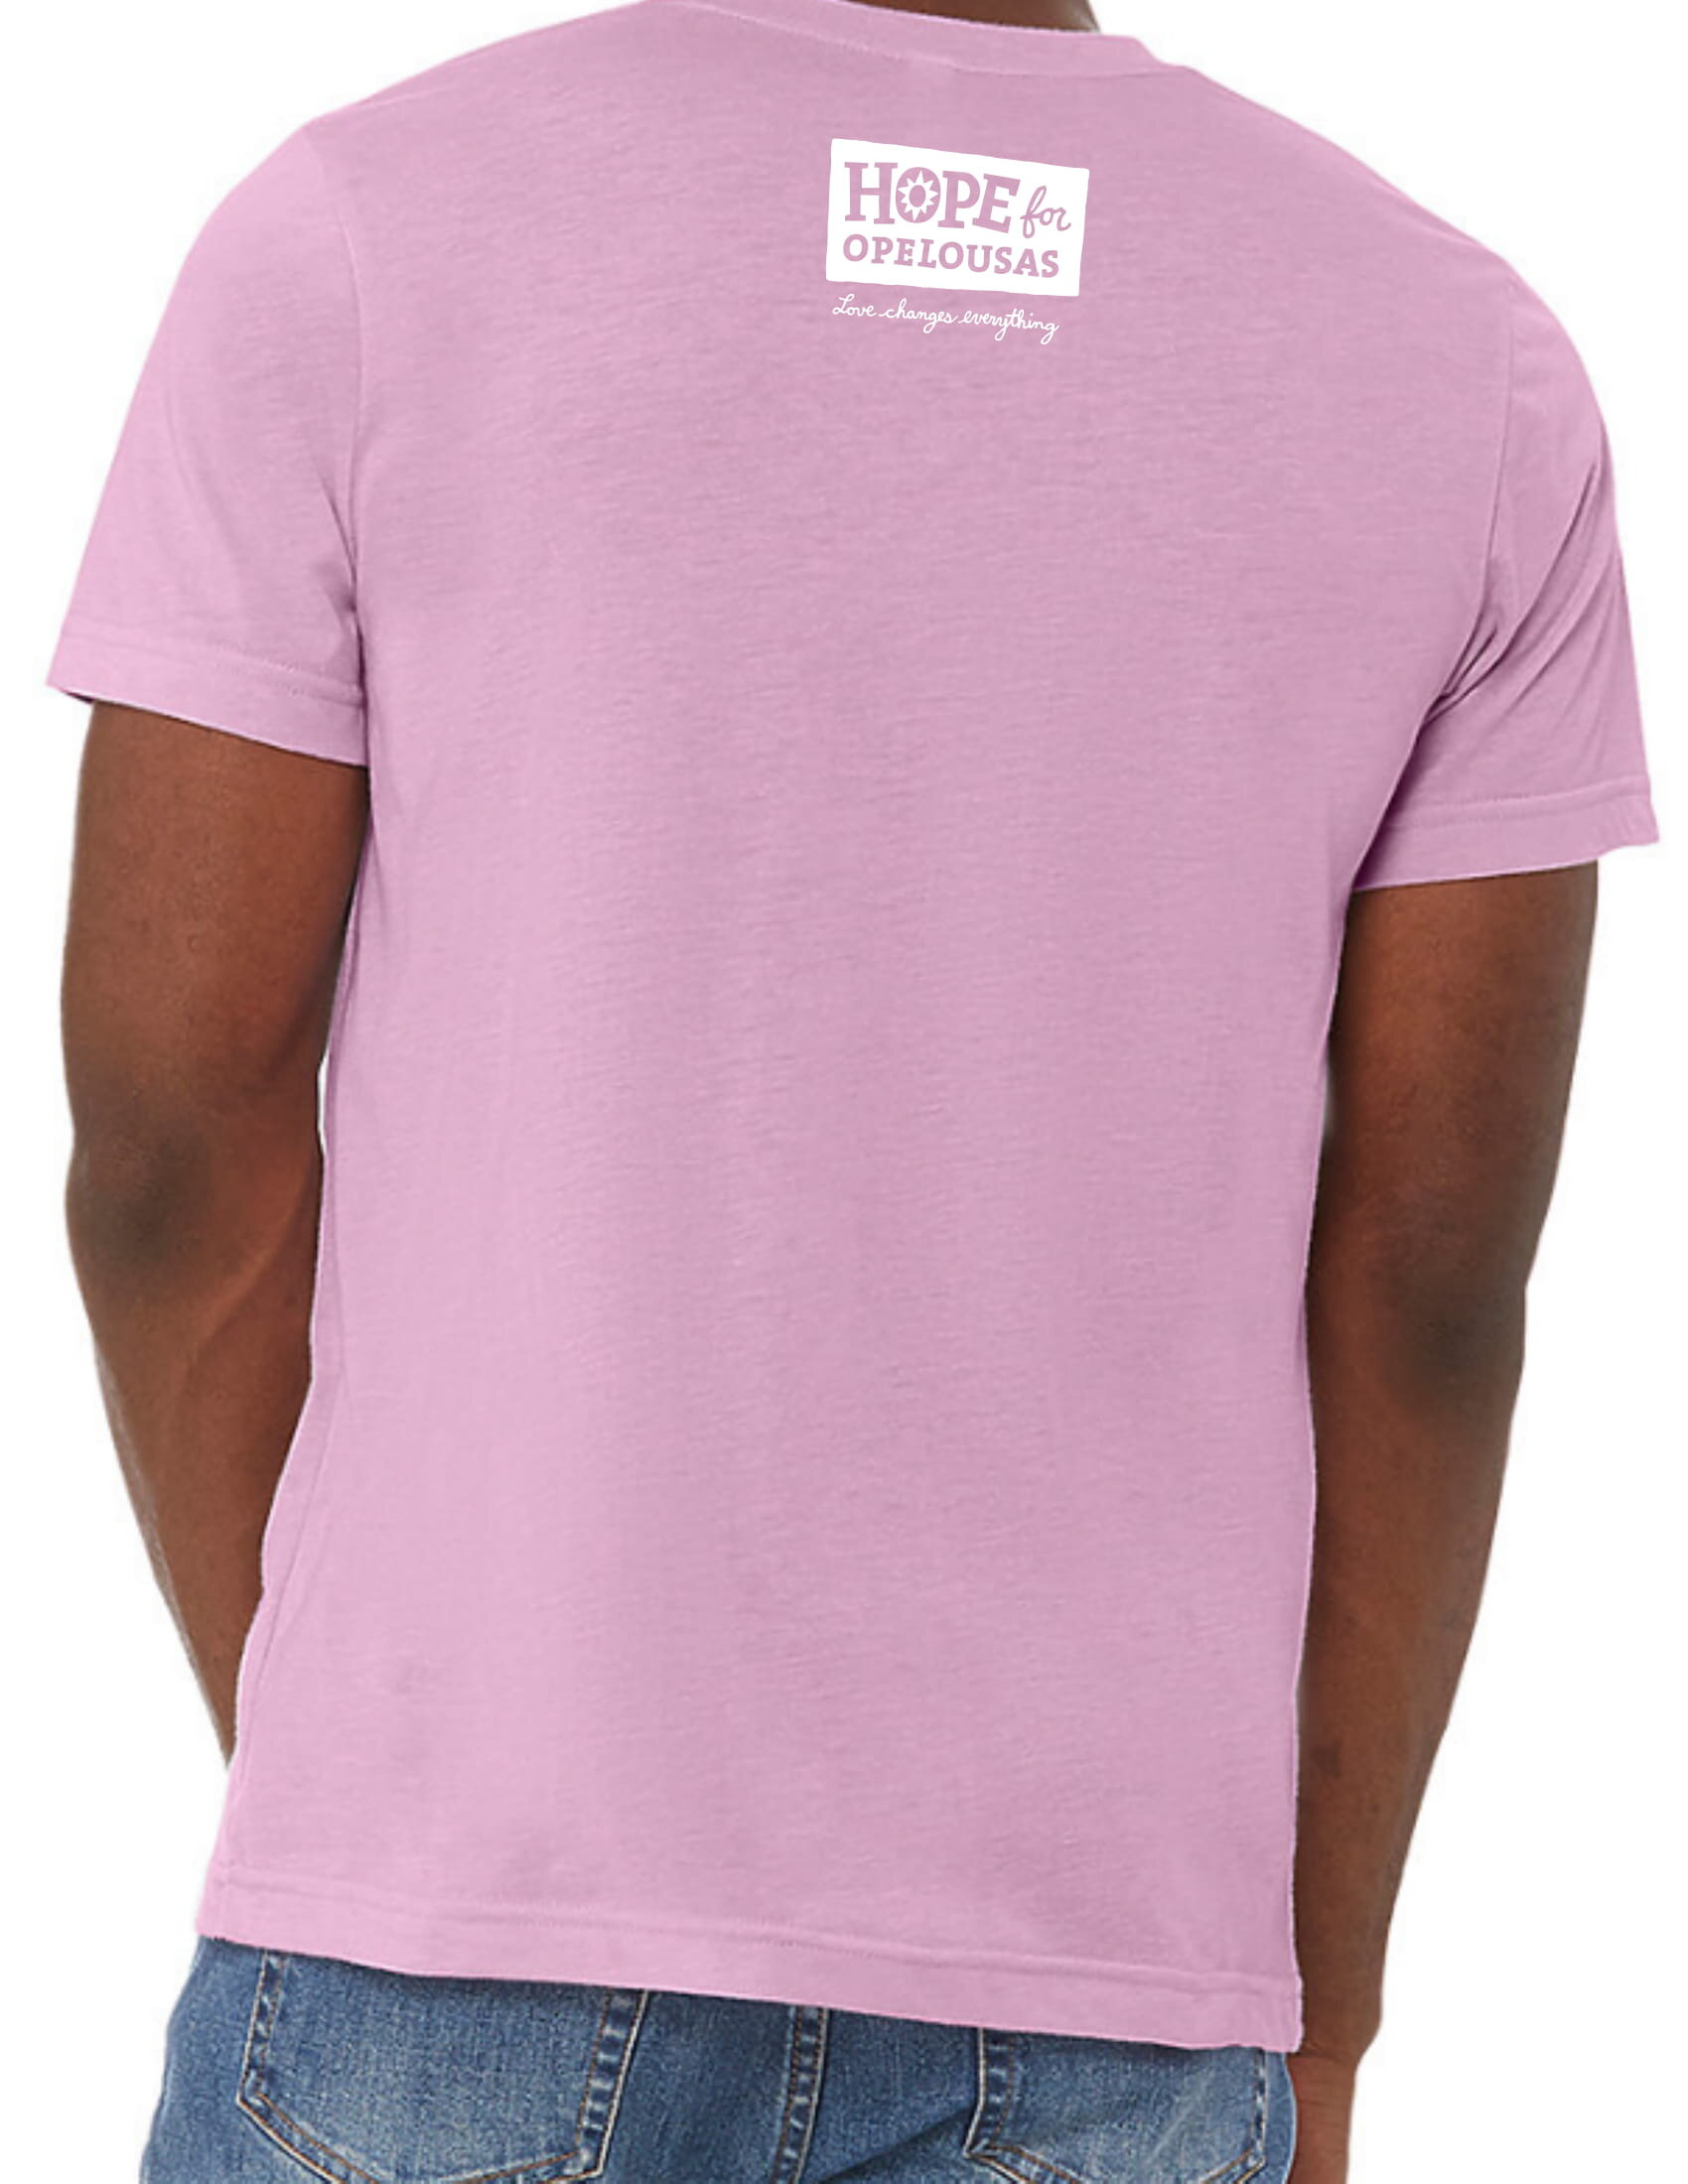 Louisiana Love - Louisiana - Long Sleeve T-Shirt